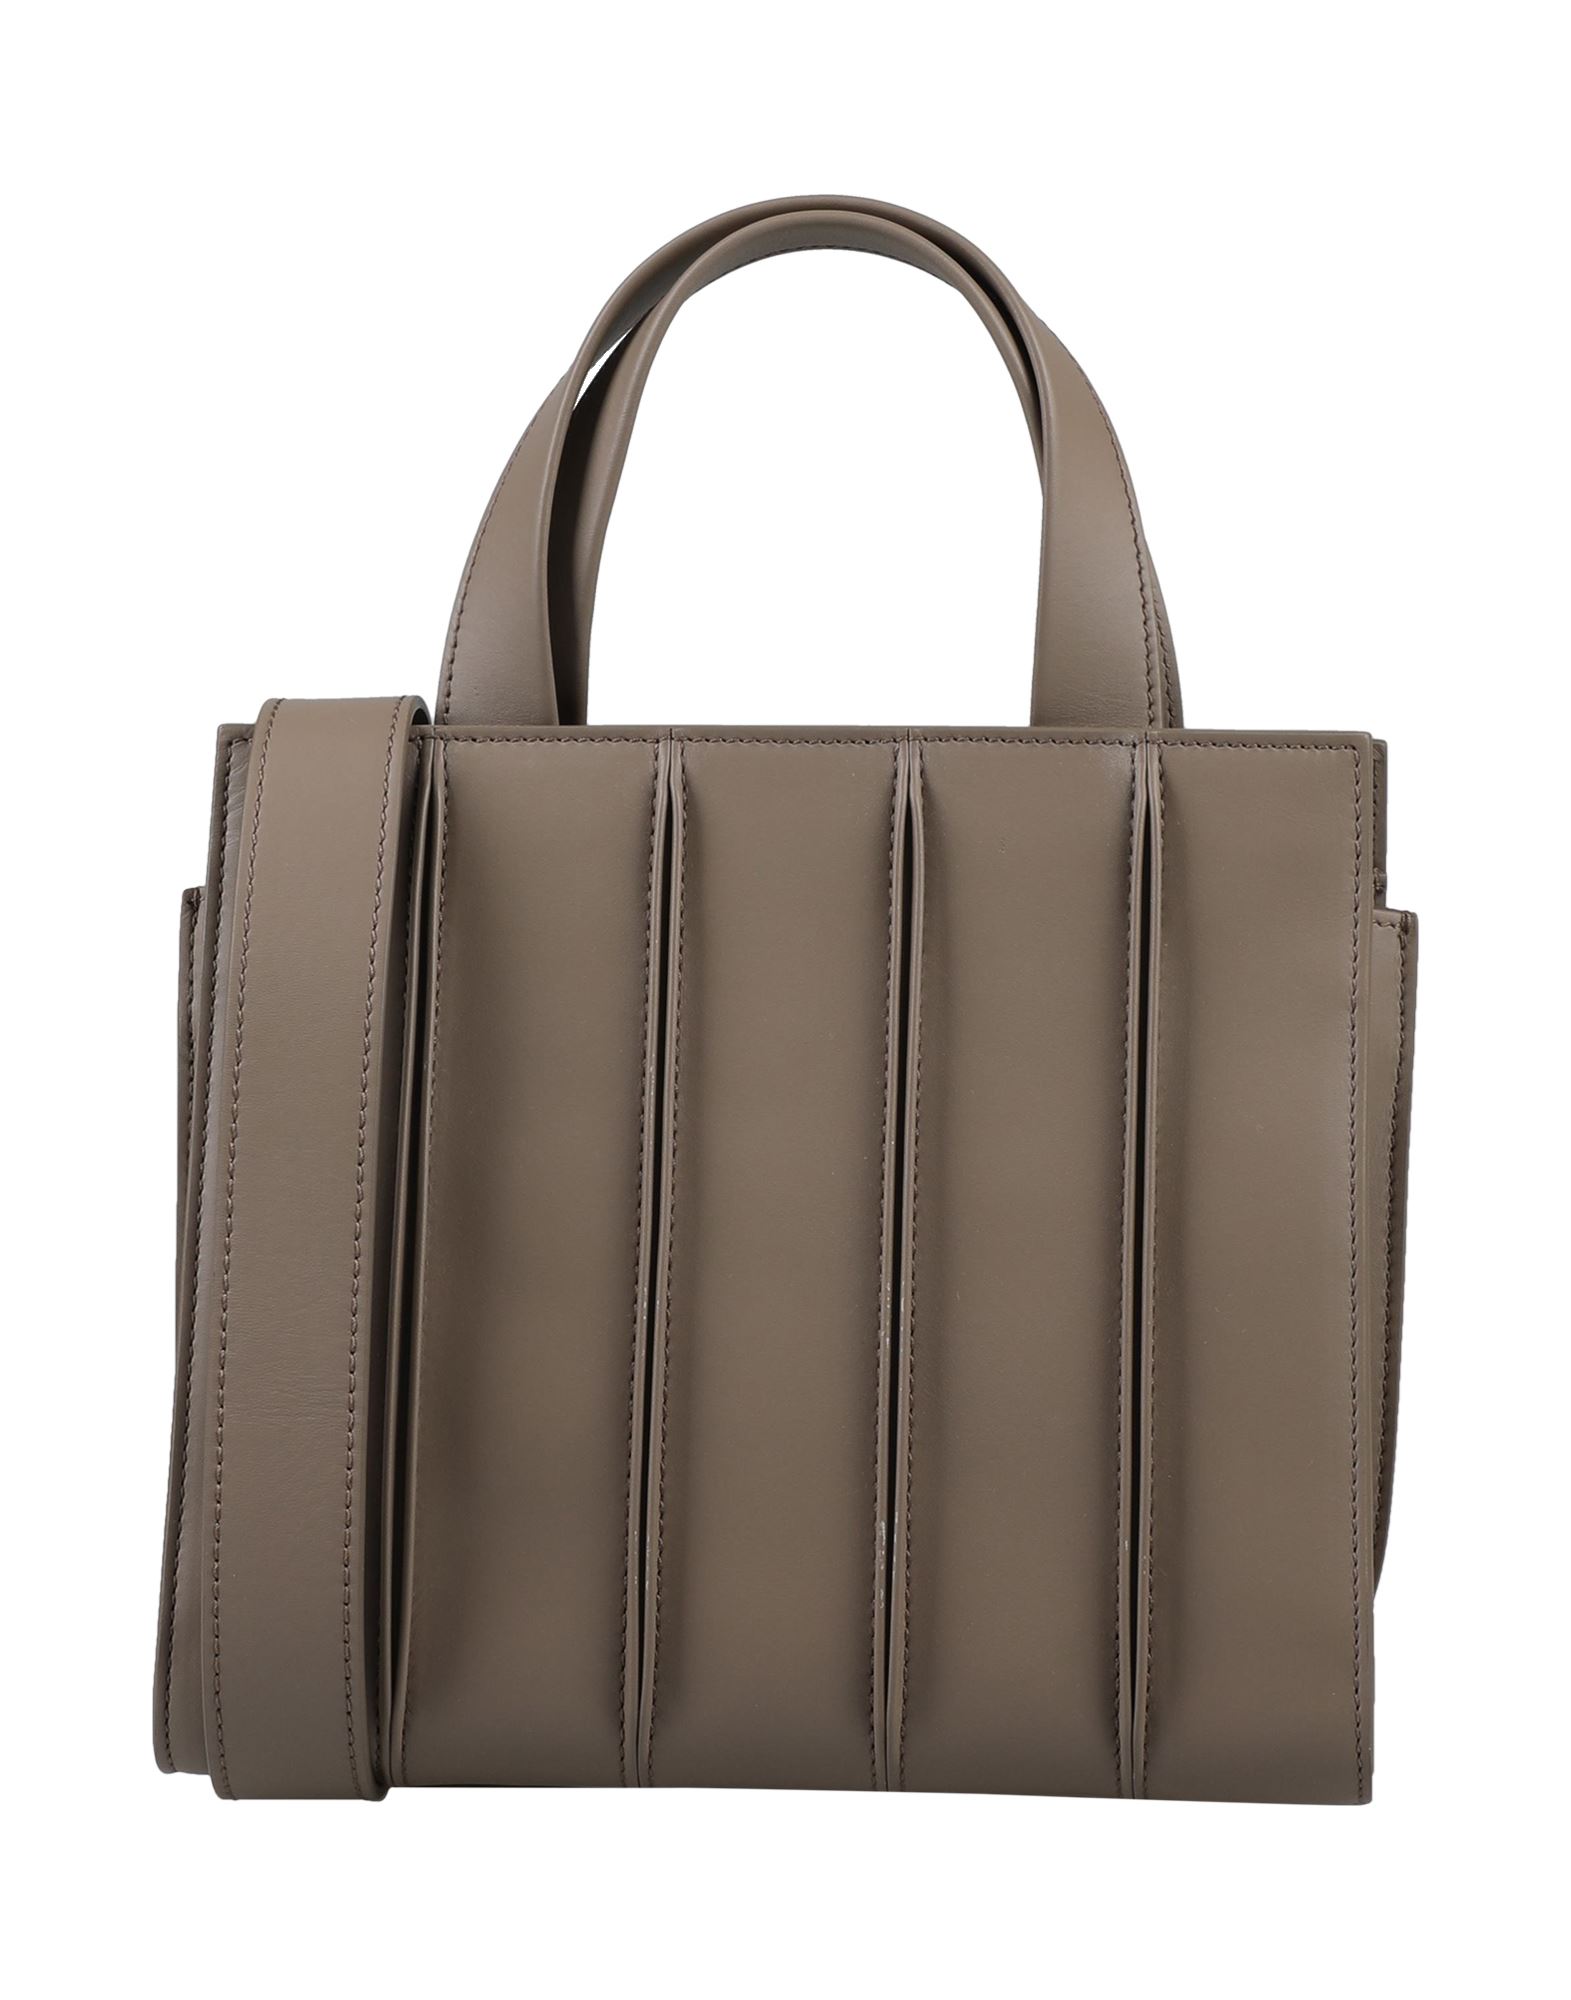 MAX MARA Handbags - Item 45544805